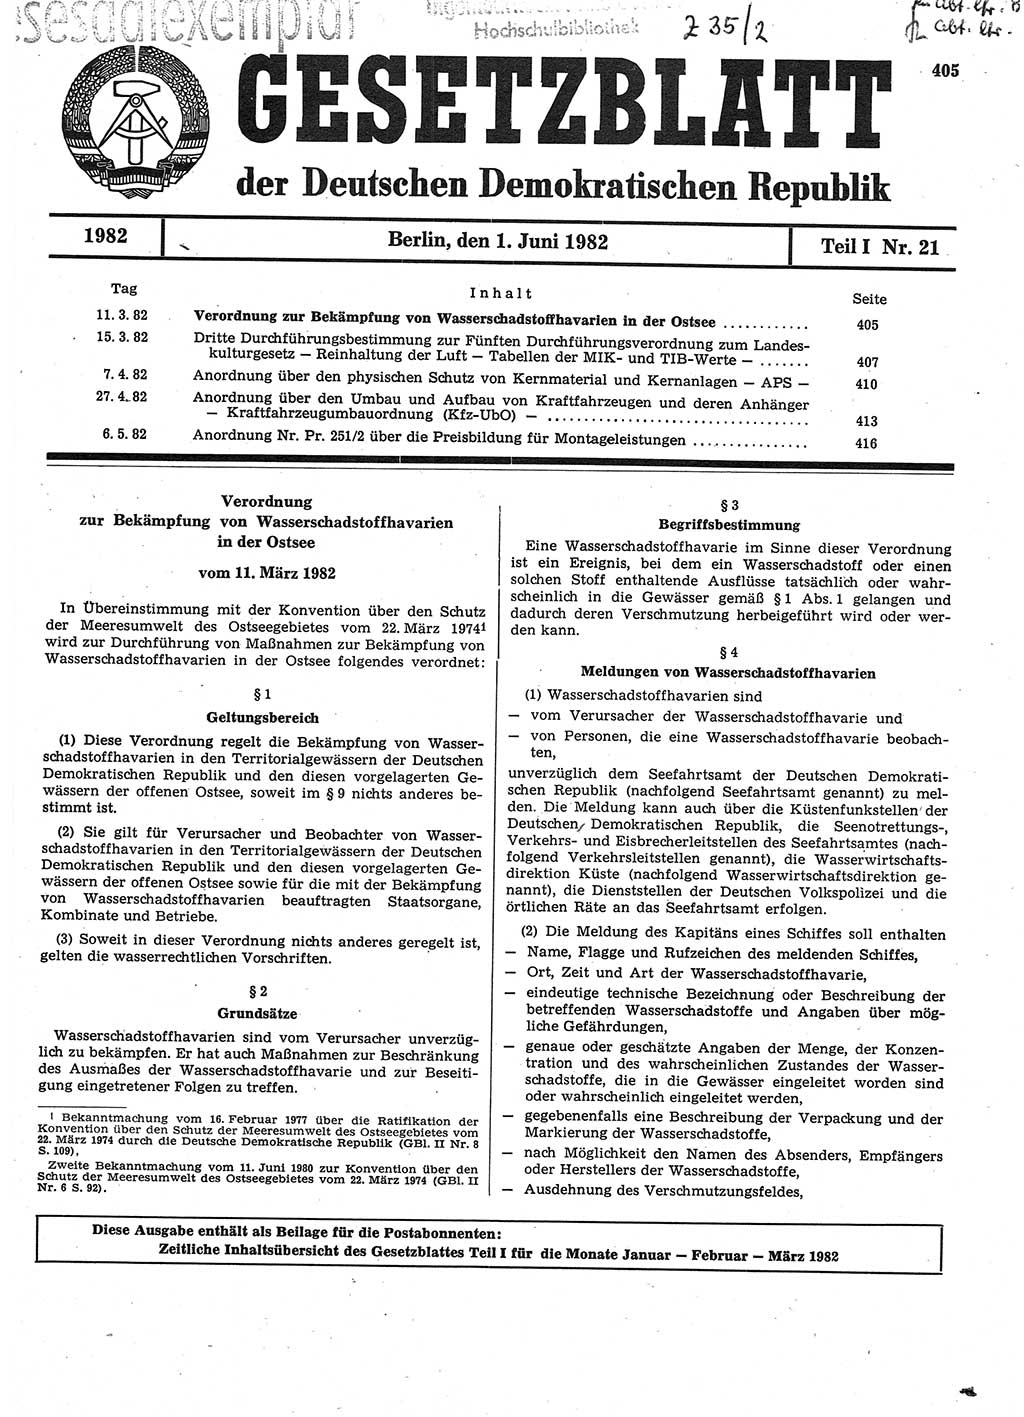 Gesetzblatt (GBl.) der Deutschen Demokratischen Republik (DDR) Teil Ⅰ 1982, Seite 405 (GBl. DDR Ⅰ 1982, S. 405)